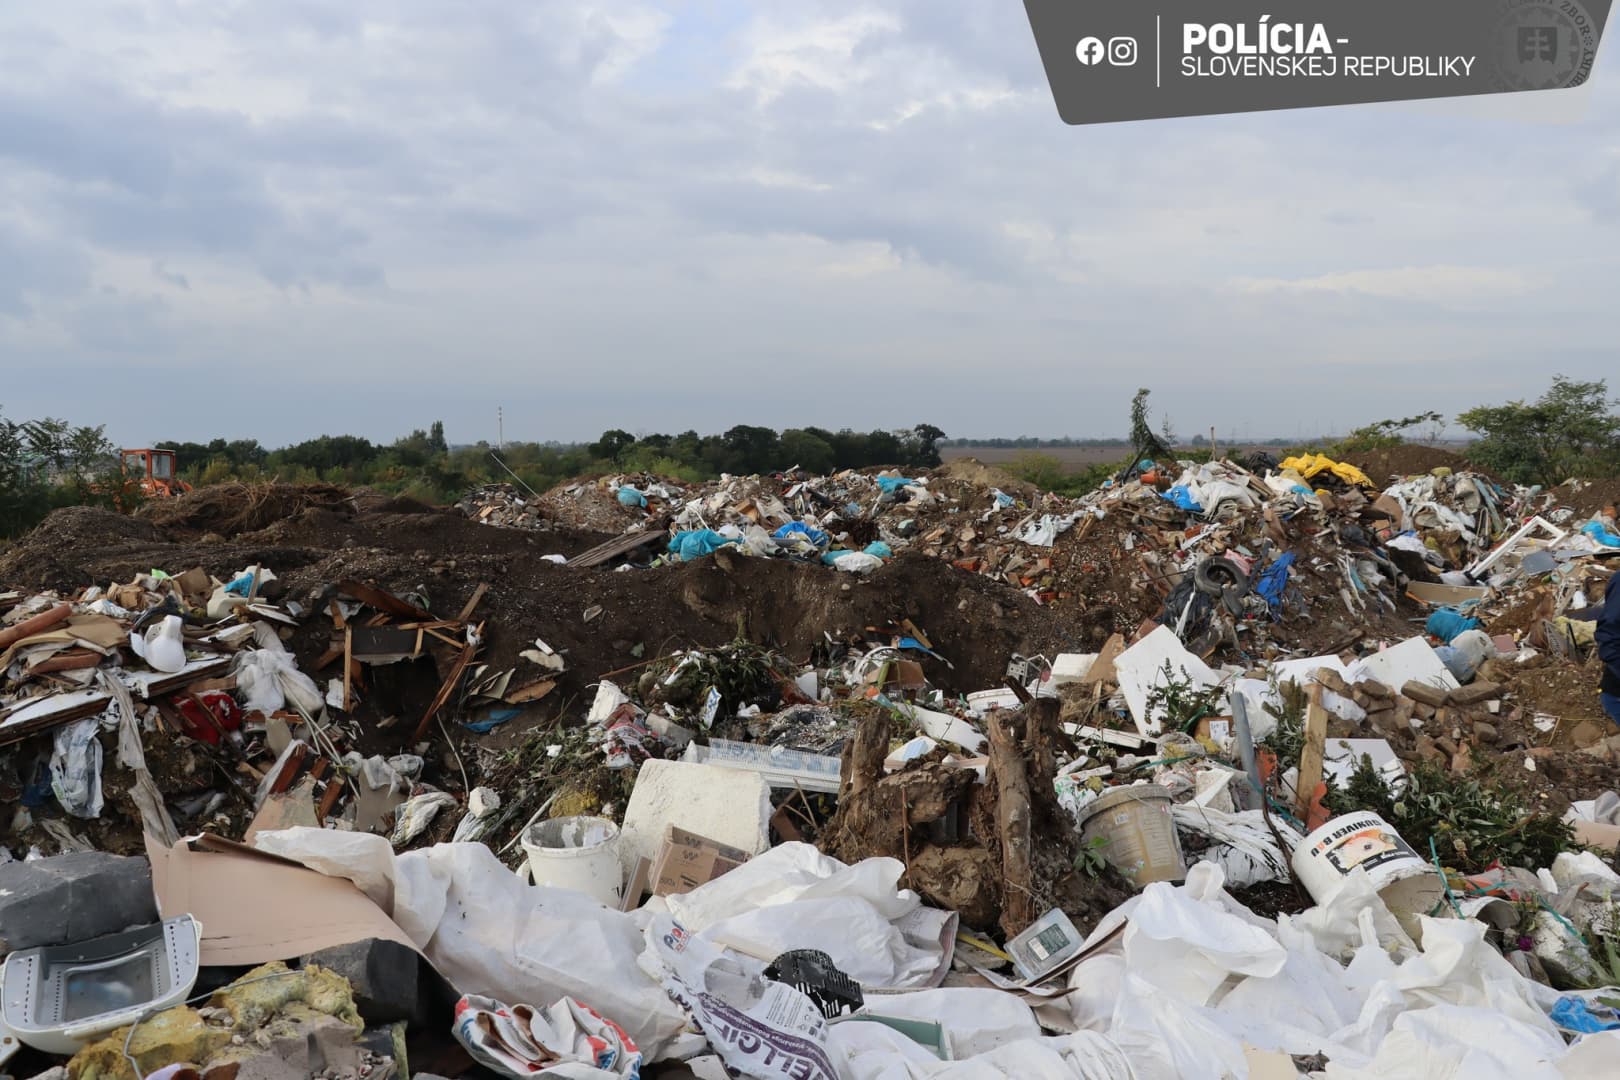 Őrületes mennyiségű hulladékot pakolt le illegálisan egy bakai férfi, több millió euróba kerülhet az elszállítása (FOTÓK)